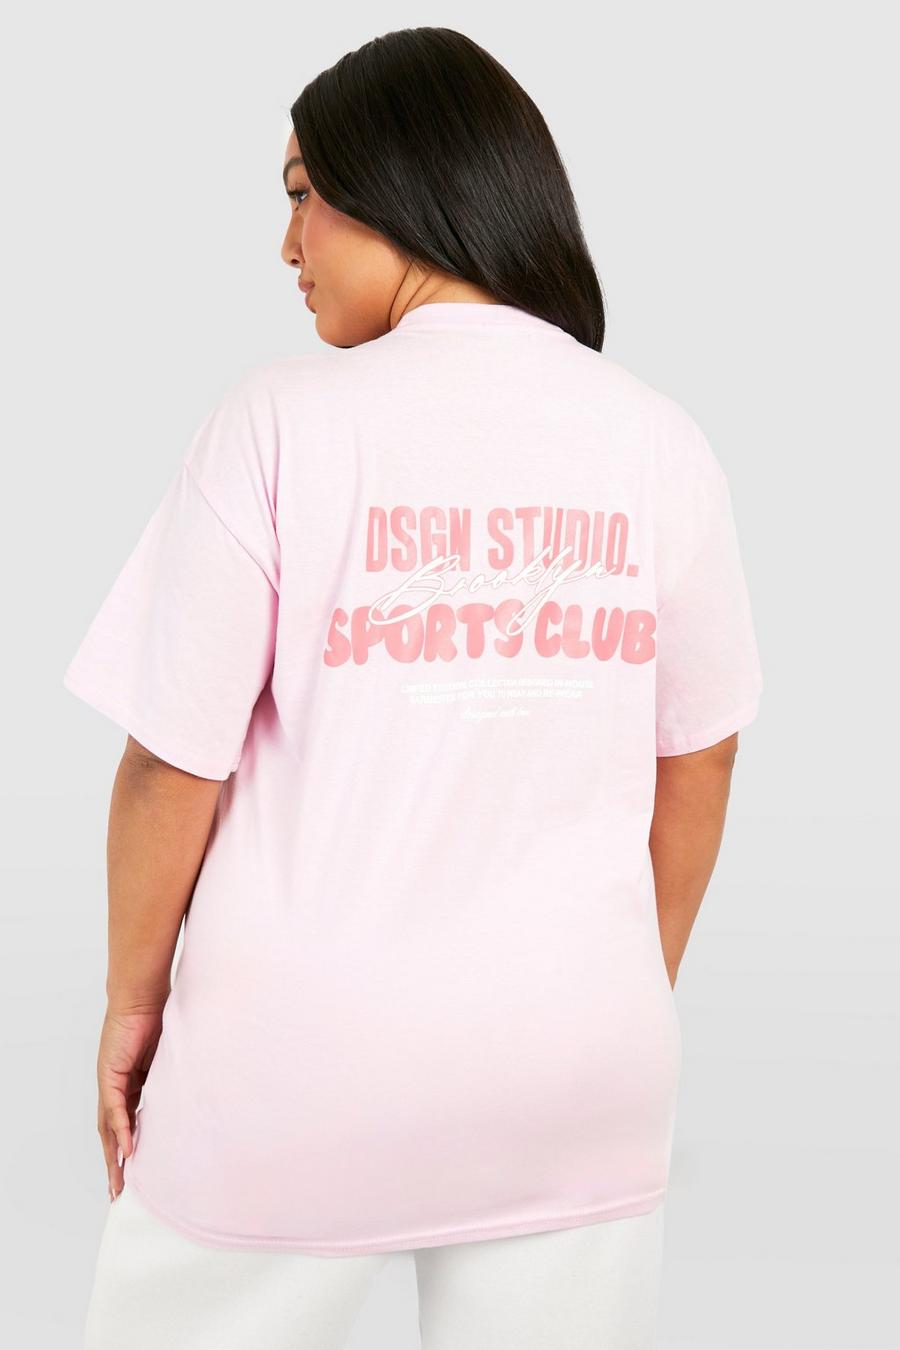 Camiseta Plus con estampado Dsgn Studio Brooklyn, Baby pink